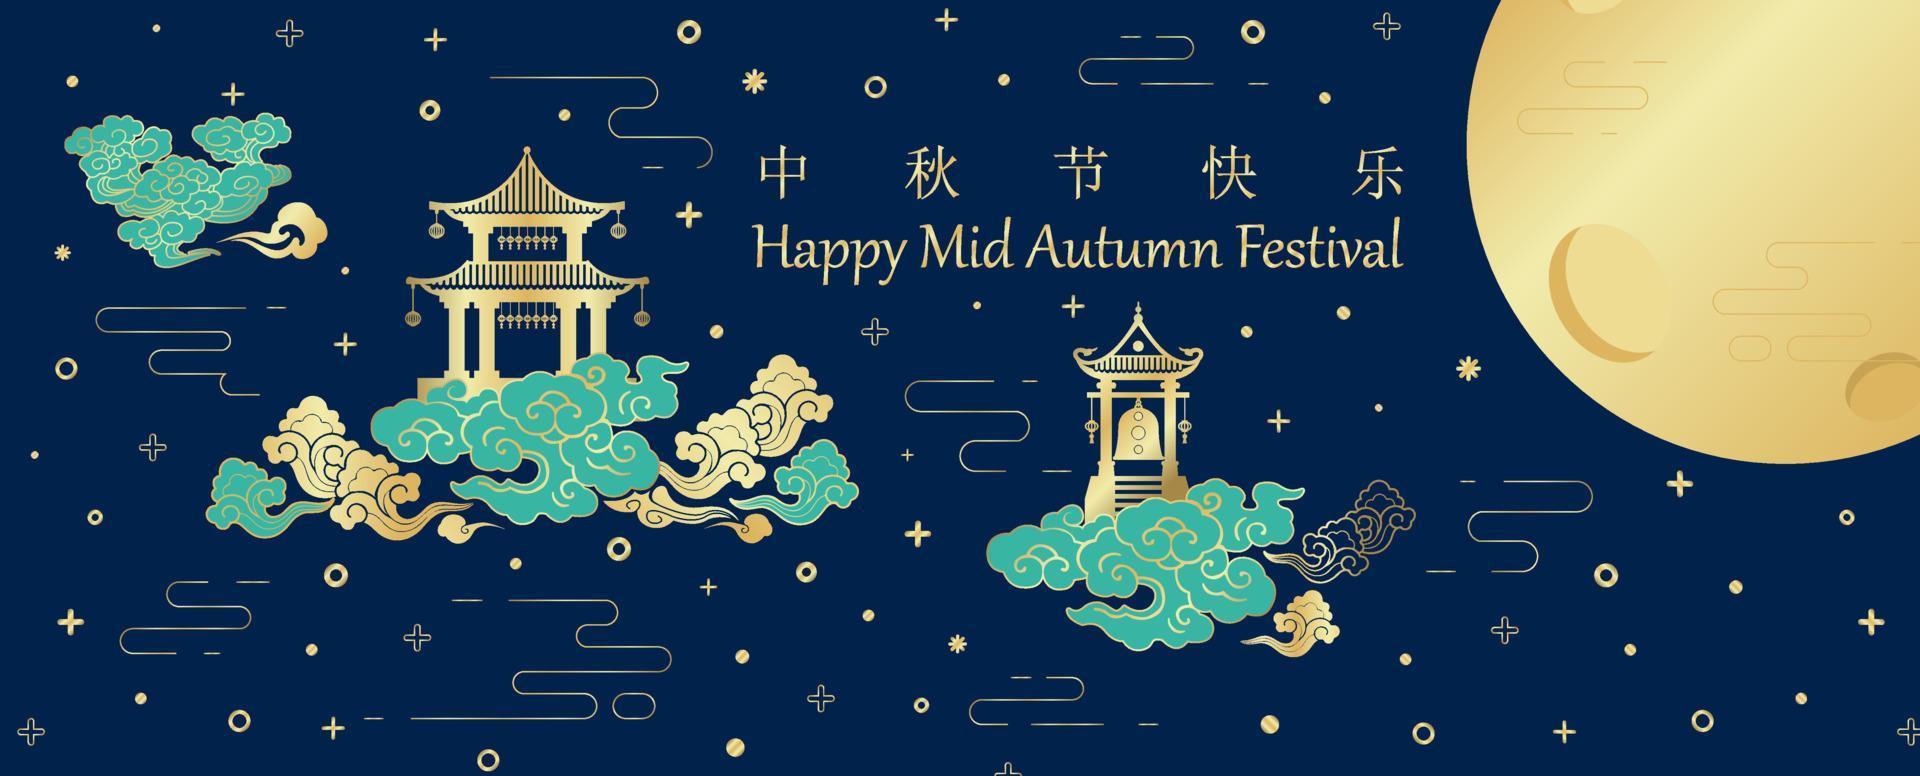 edifícios antigos chineses em nuvens com chinês e o nome das letras do evento, lua dourada gigante no padrão de estrelas e fundo azul escuro. letras chinesas significam festival do meio do outono em inglês. vetor